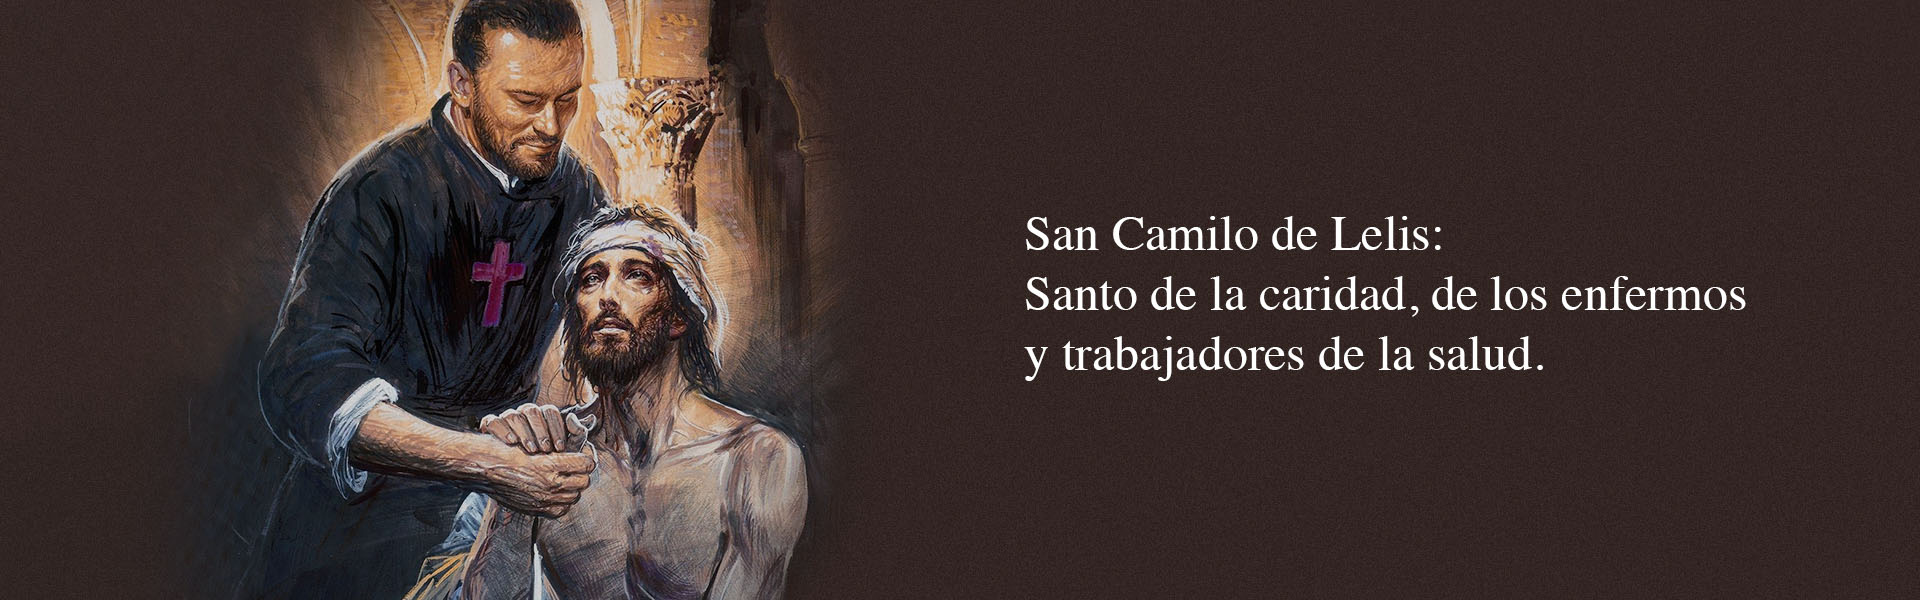 Un ejemplo de humanización, San Camilo de Lelis